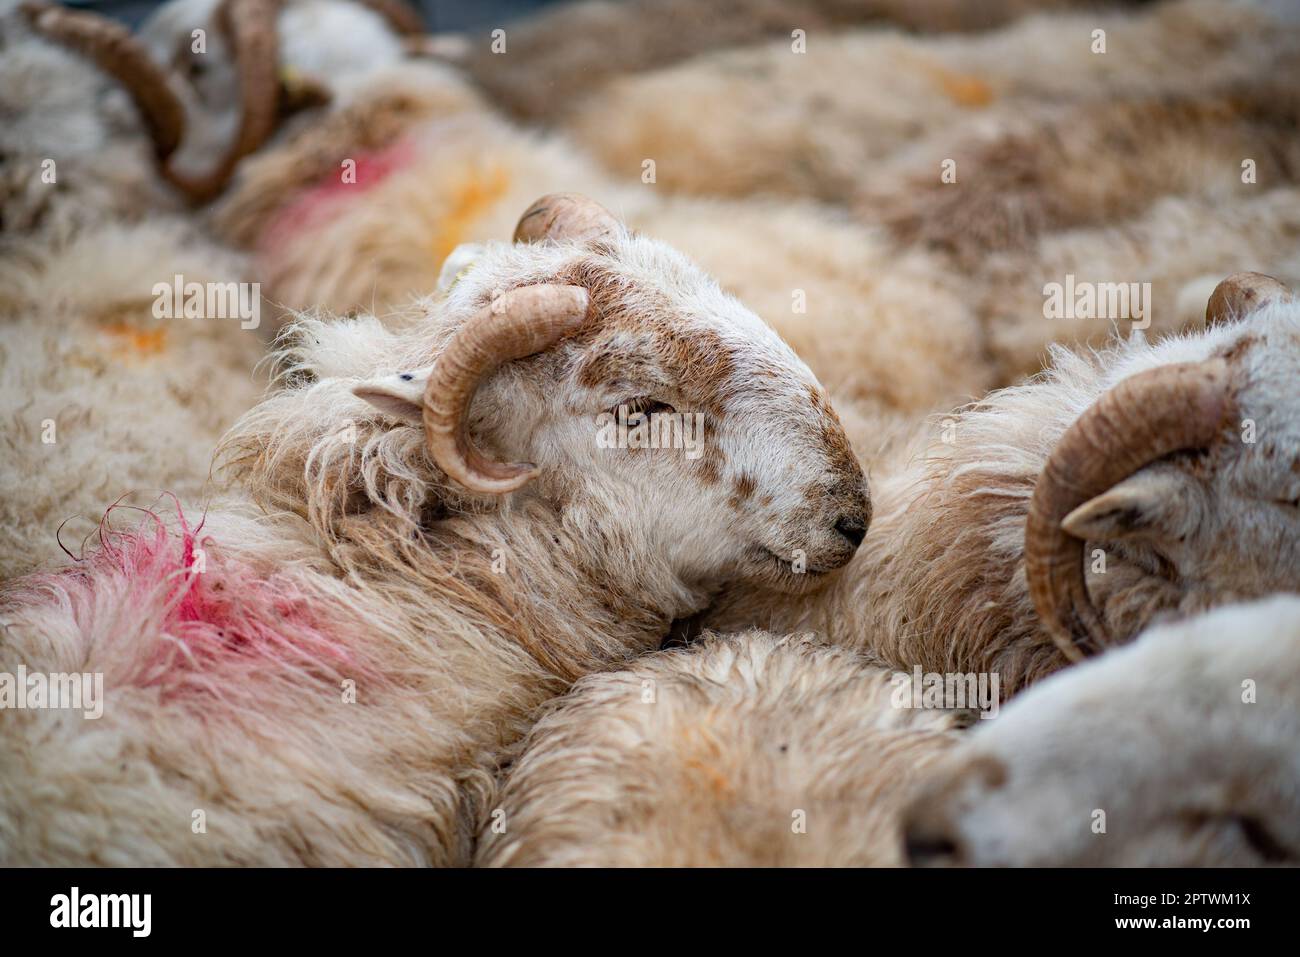 Close-up of Welsh Mountain lambs, Market Drayton, Shropshire, UK. Stock Photo